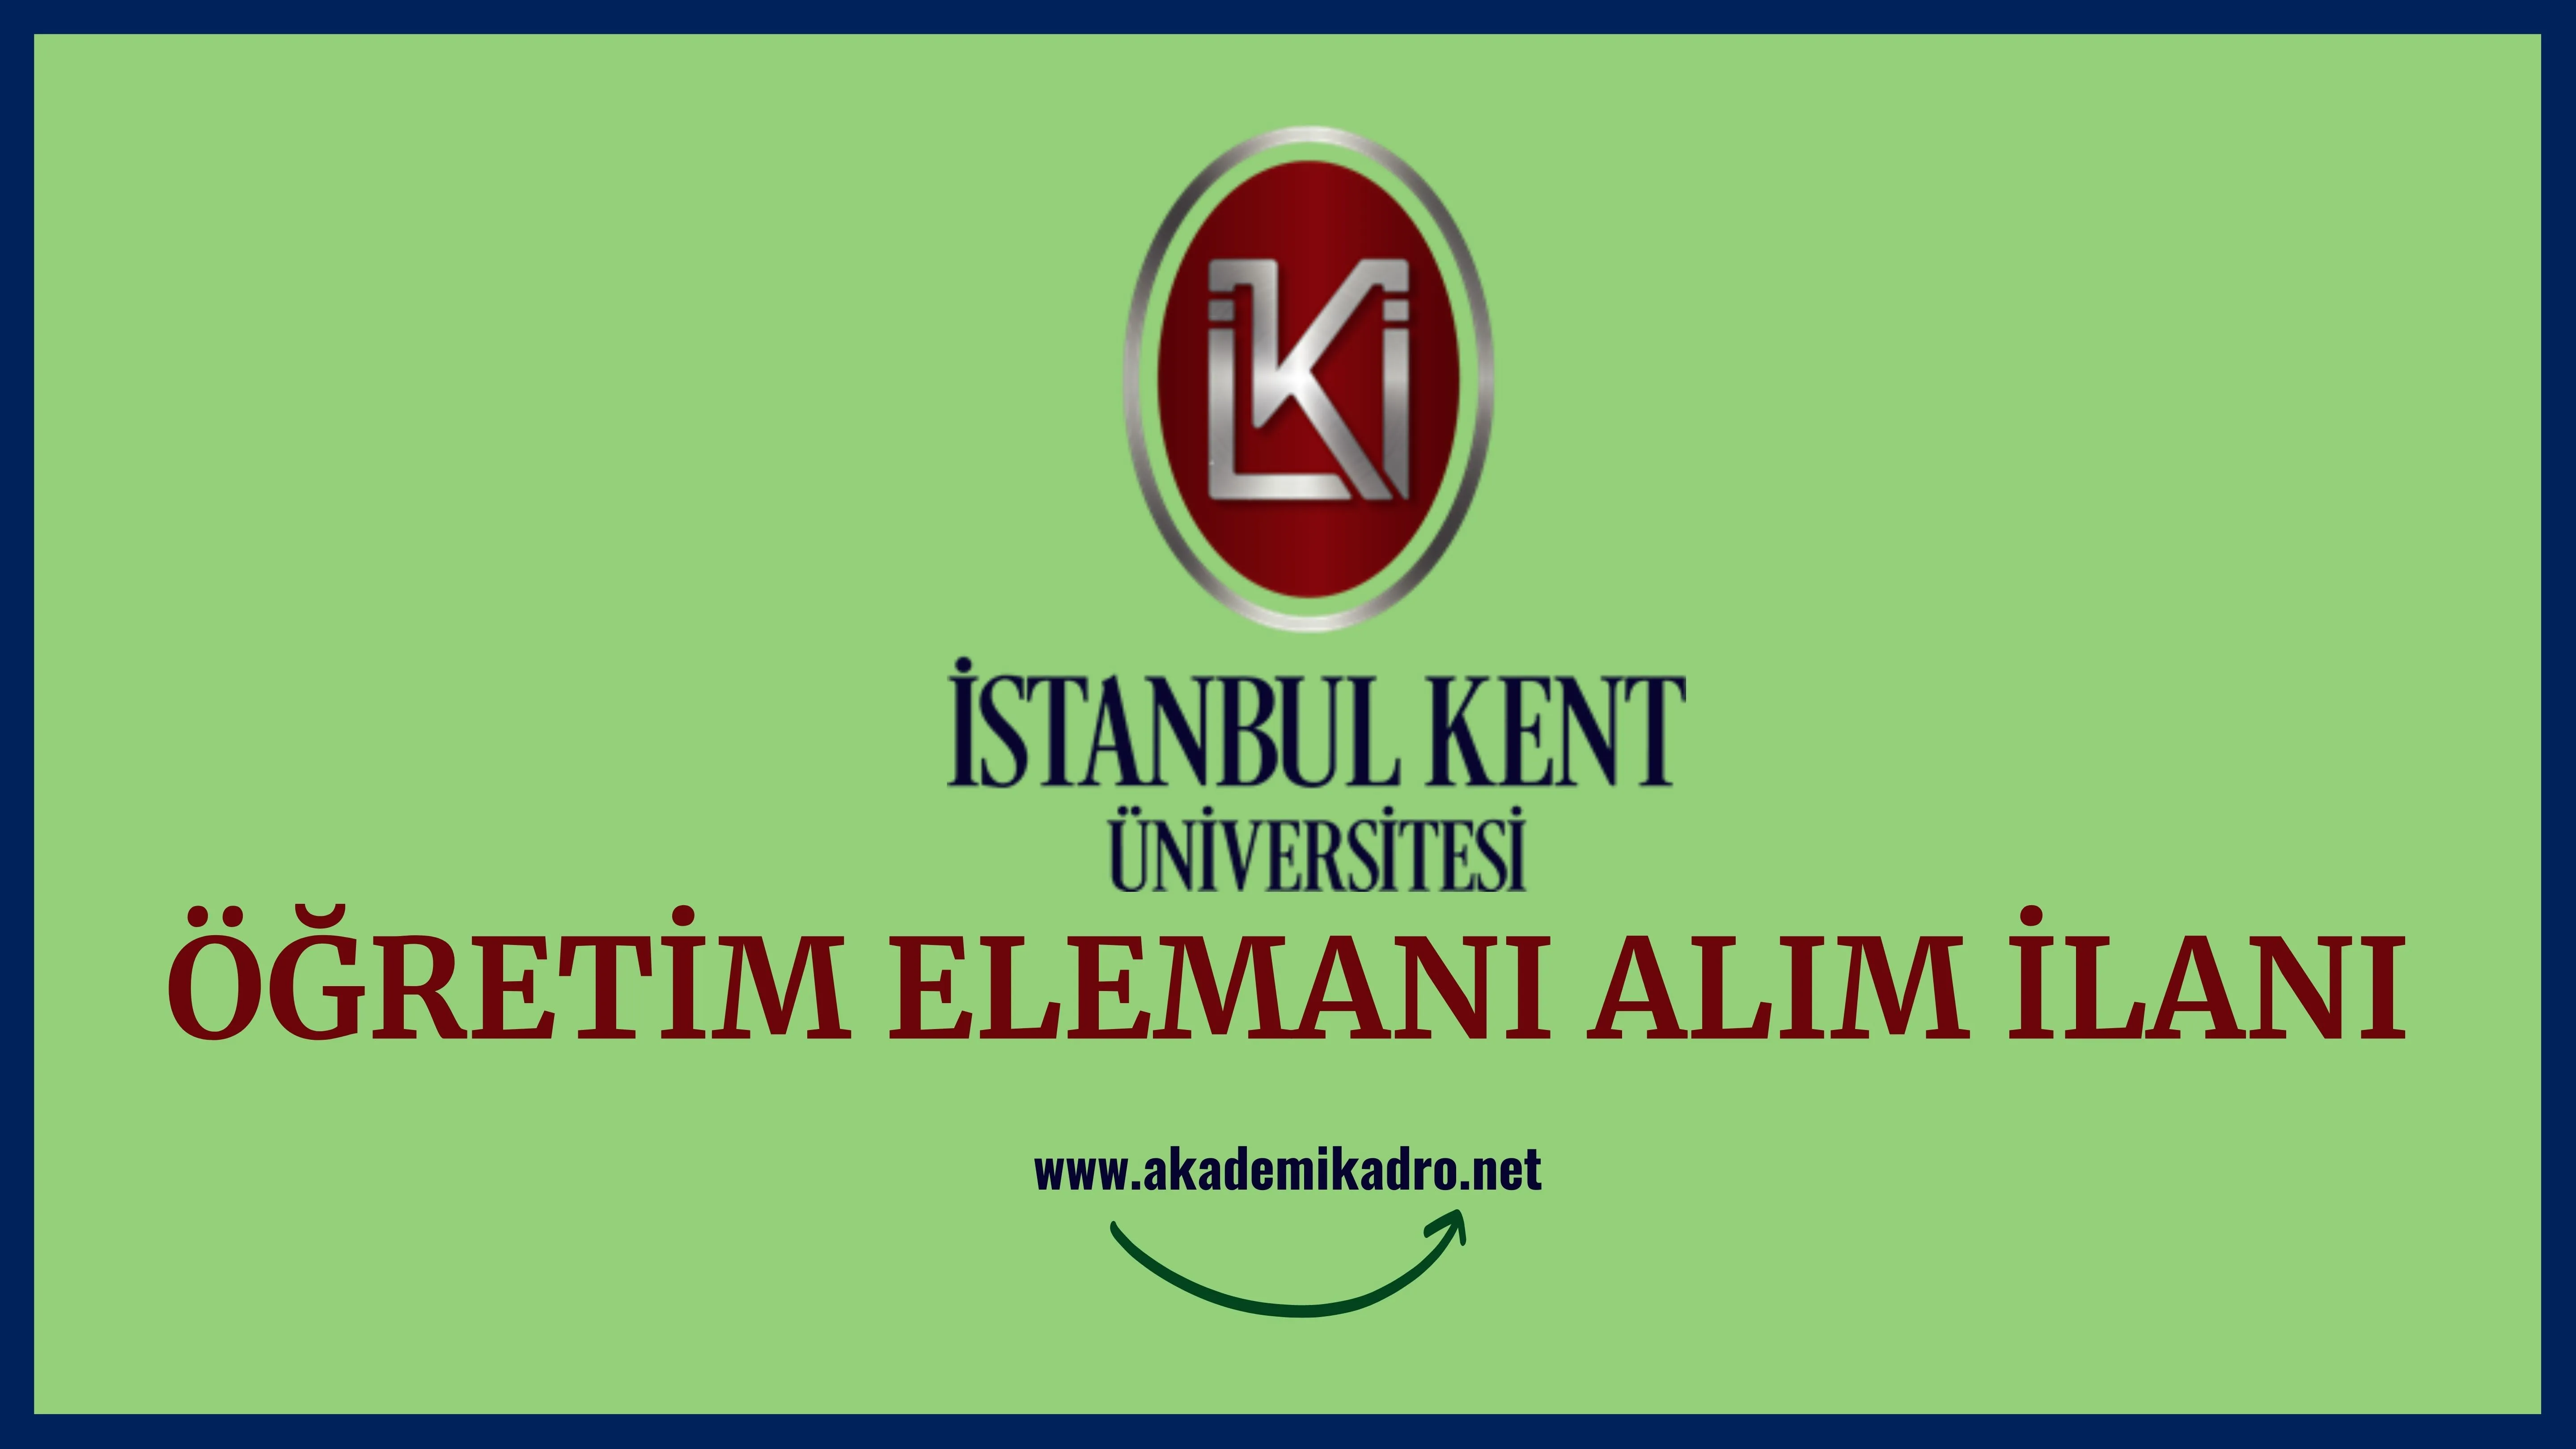 İstanbul Kent Üniversitesi 3 Araştırma görevlisi, 2 Öğretim görevlisi ve öğretim üyesi olmak üzere 6 Öğretim elemanı alacak.